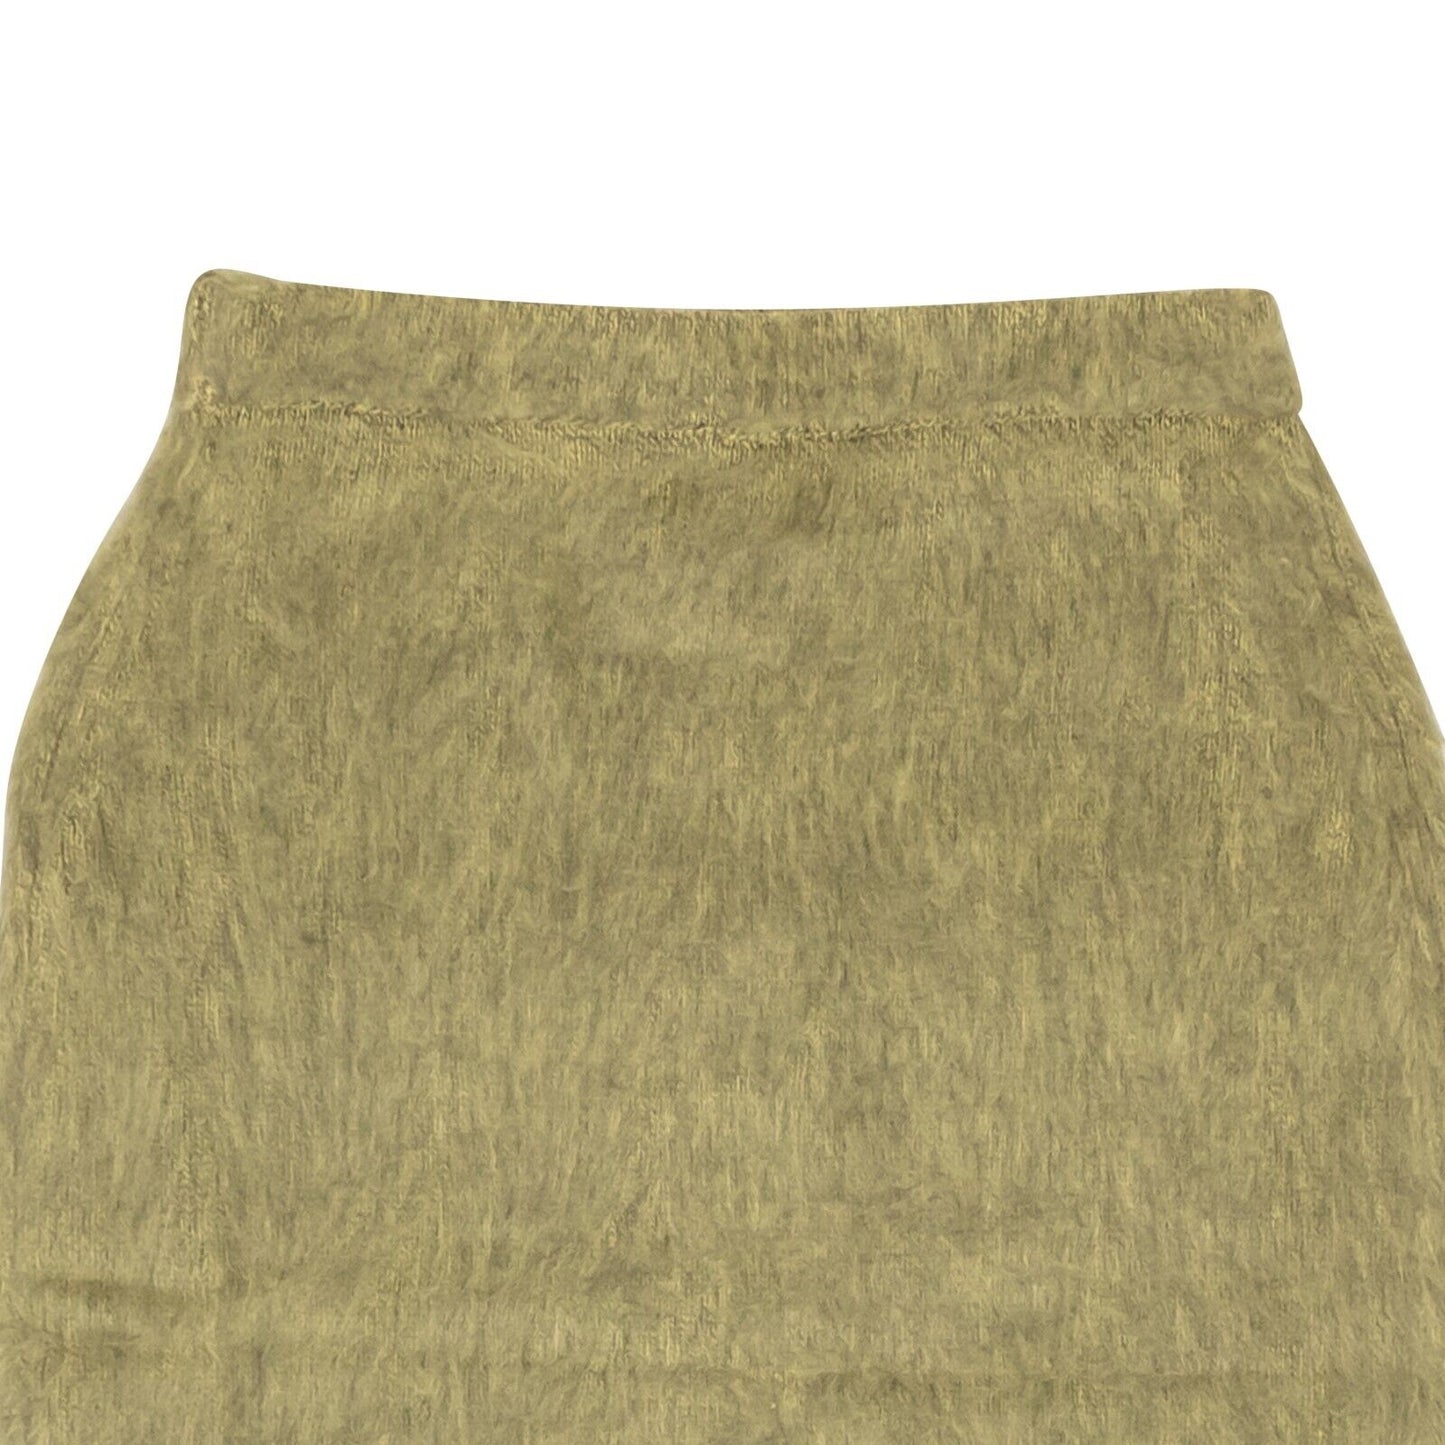 Stussy Marsh Skirt - Sand